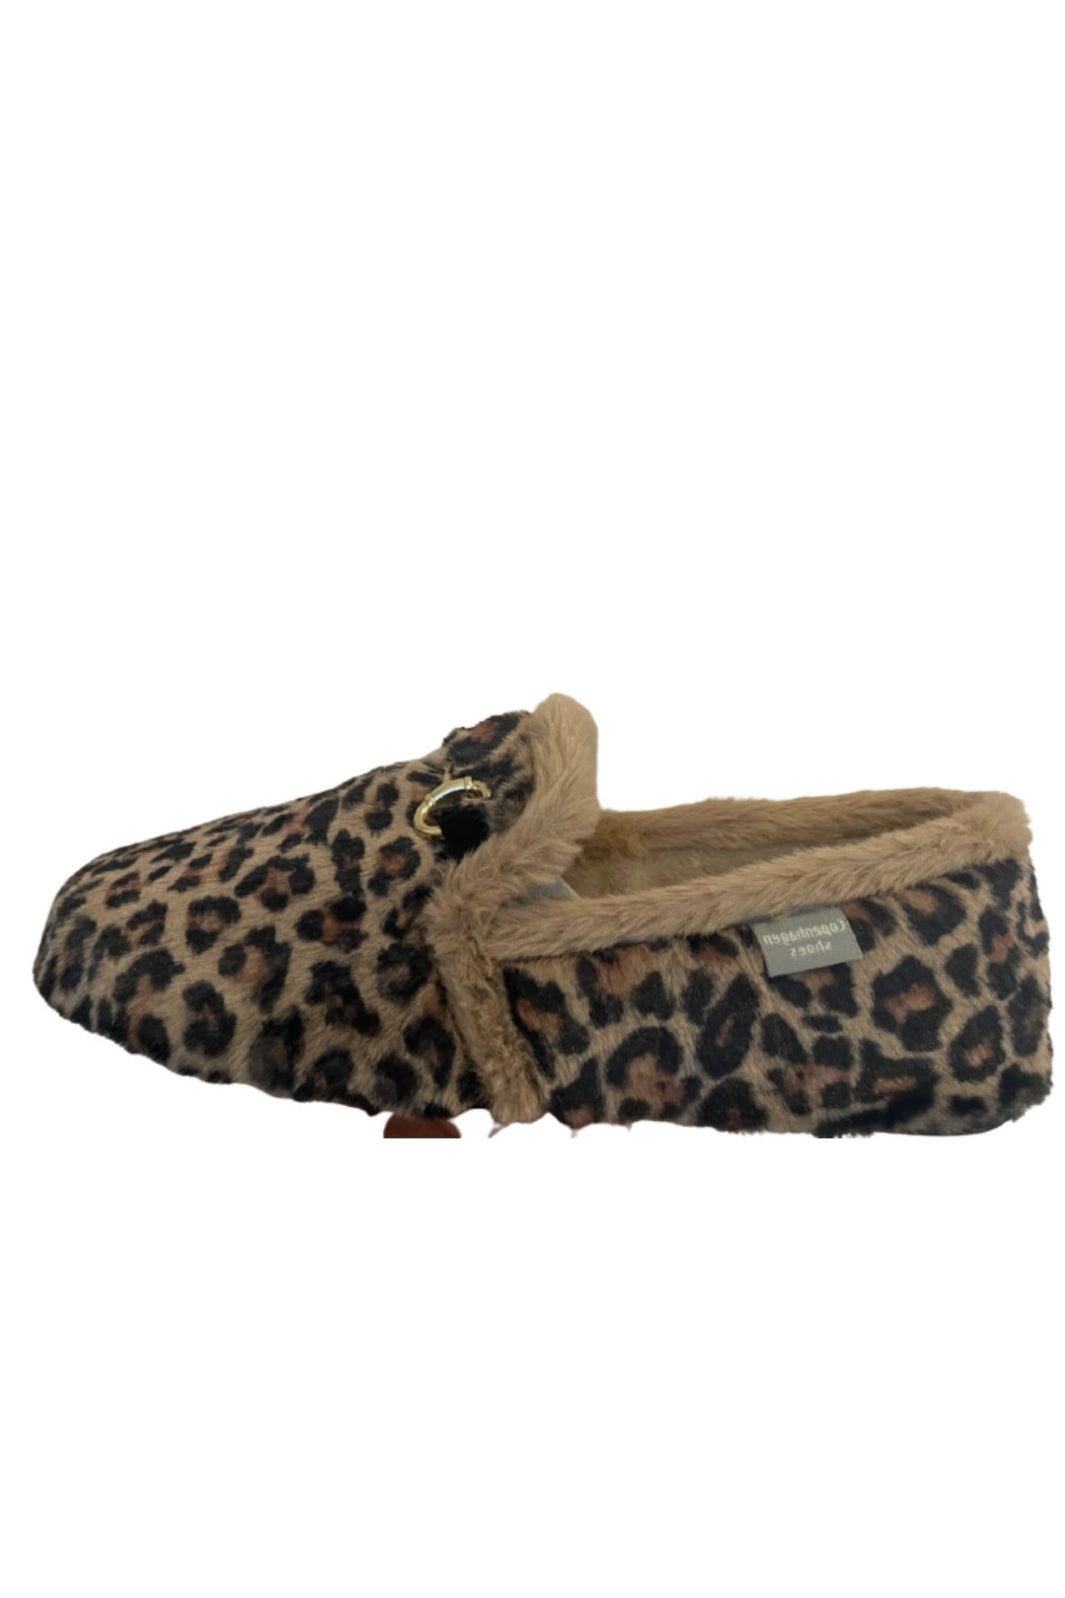 Copenhagen Shoes - Dreaming - 2204 Black/Brown Leopard Hjemmesko & sutsko 